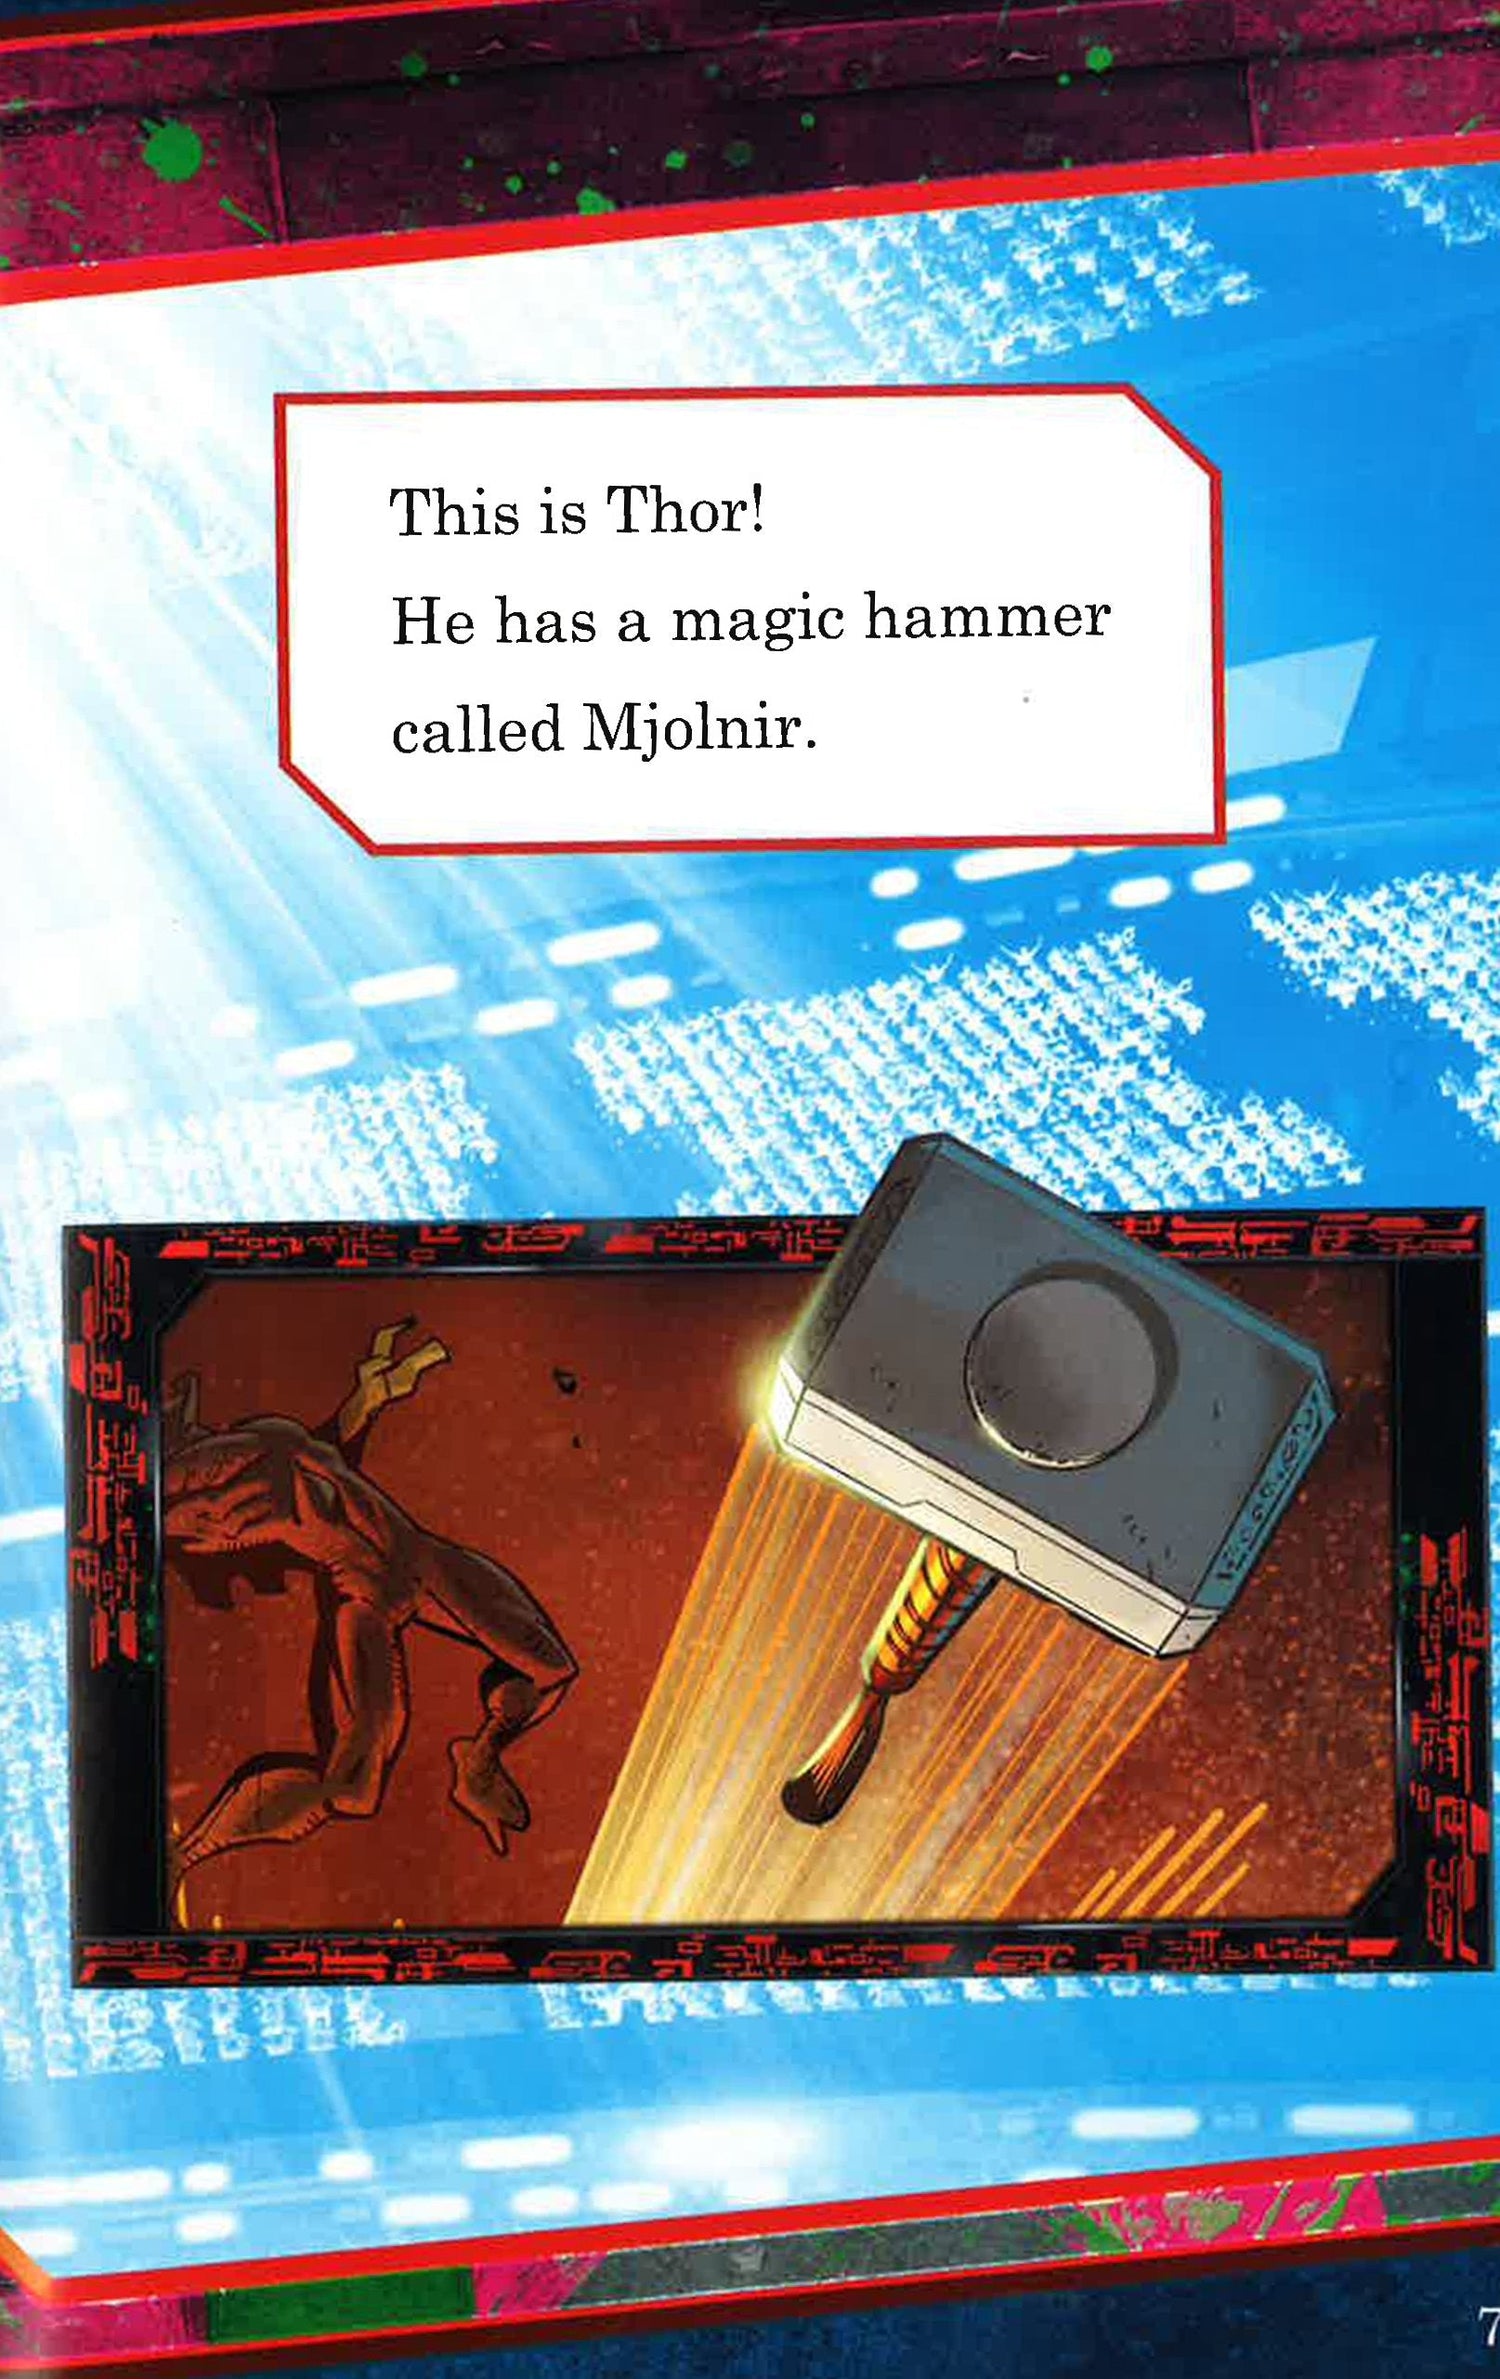 Marvels Thor Ragnarok: Thor vs Hulk (Passport to Reading Level 2)